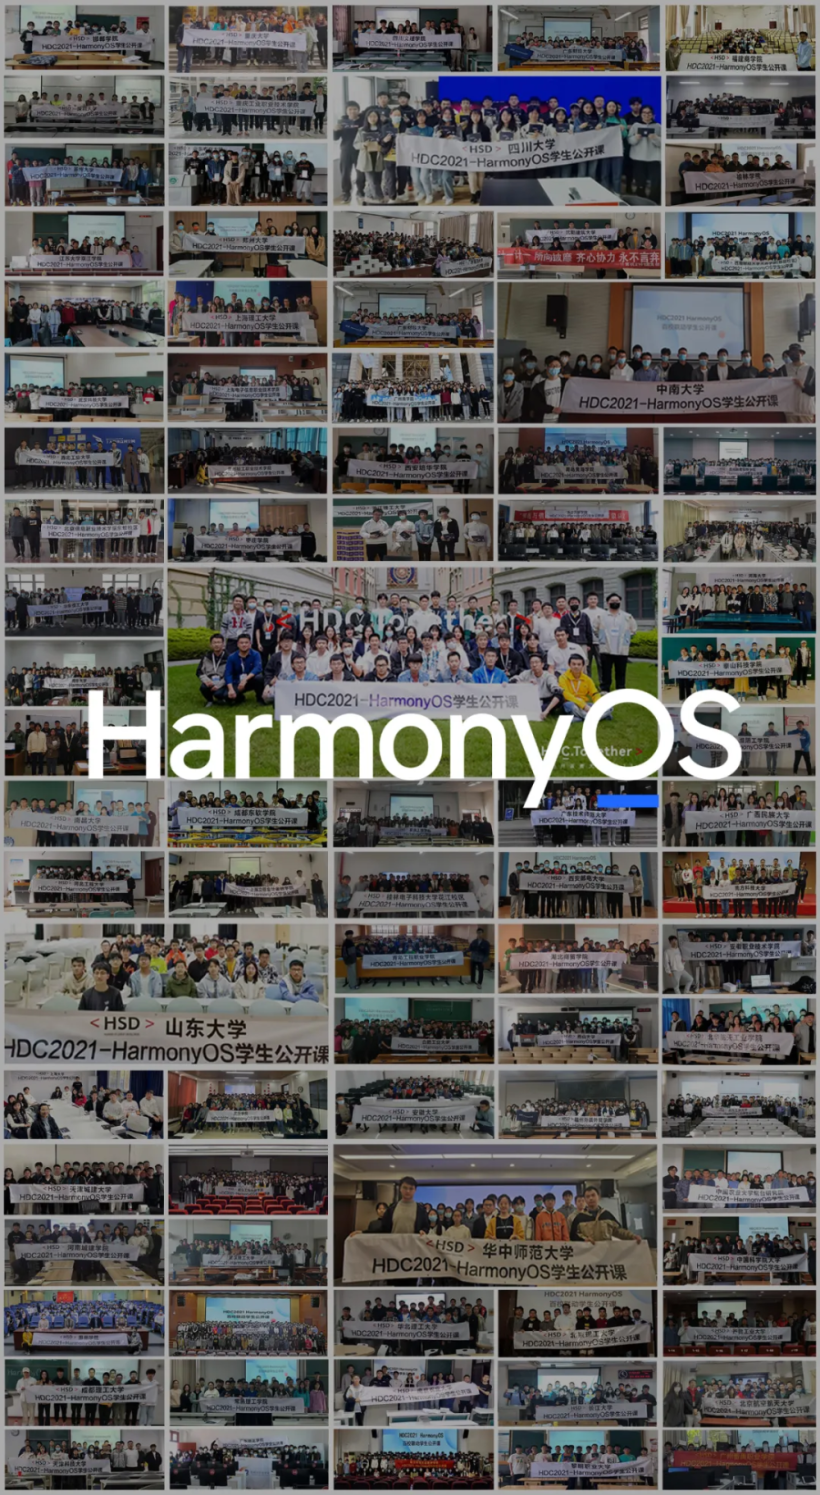 百校联动 HDC2021HarmonyOS 学生公开课成功开讲-开源基础软件社区